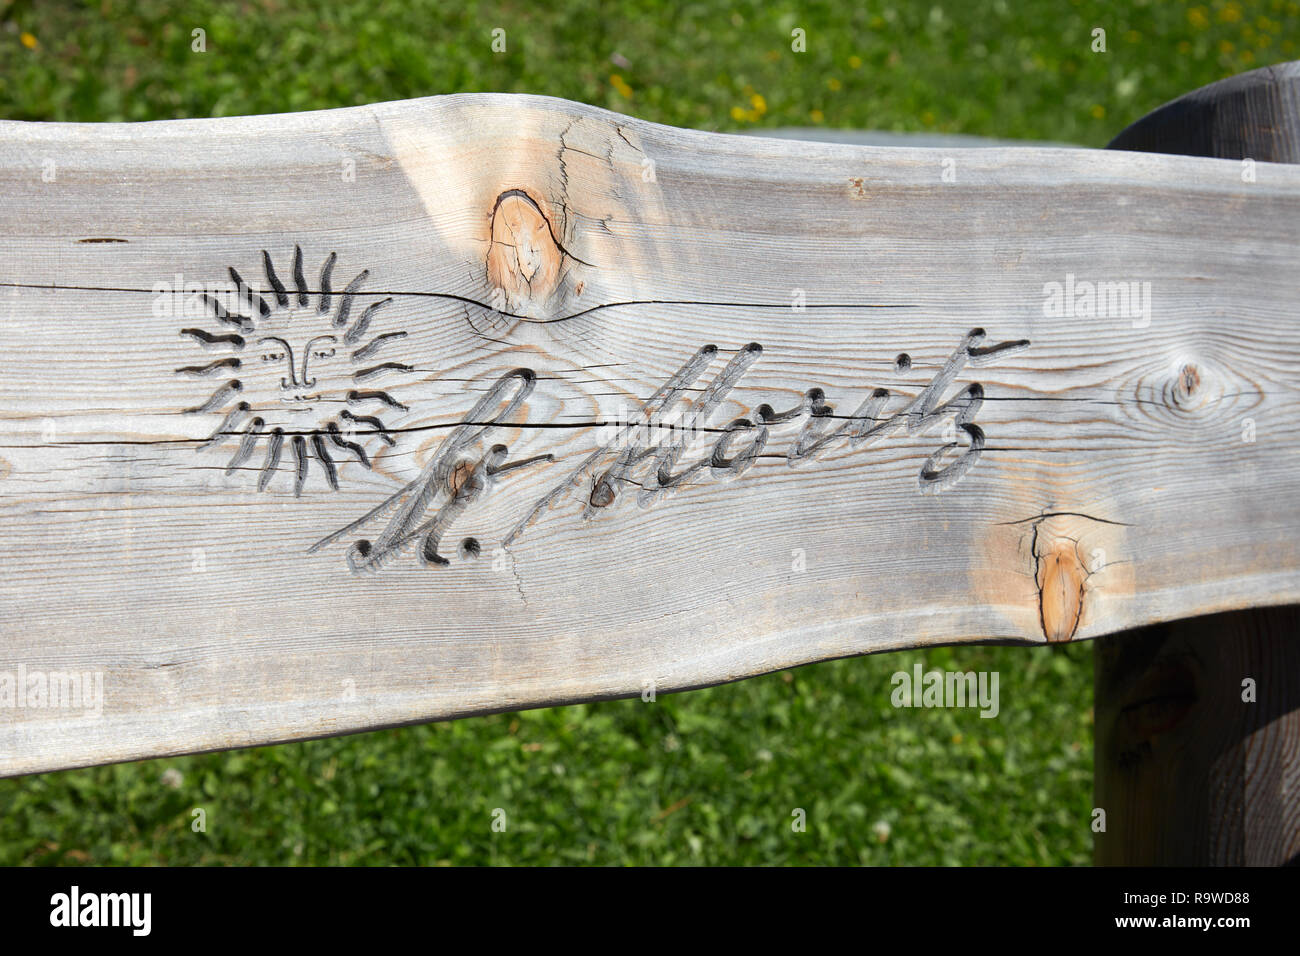 SANKT MORITZ, SCHWEIZ - 16. AUGUST 2018: Stadt logo mit Sonne in Holzbank plank an einem sonnigen Sommertag in Sankt Moritz, Schweiz geschnitzt Stockfoto